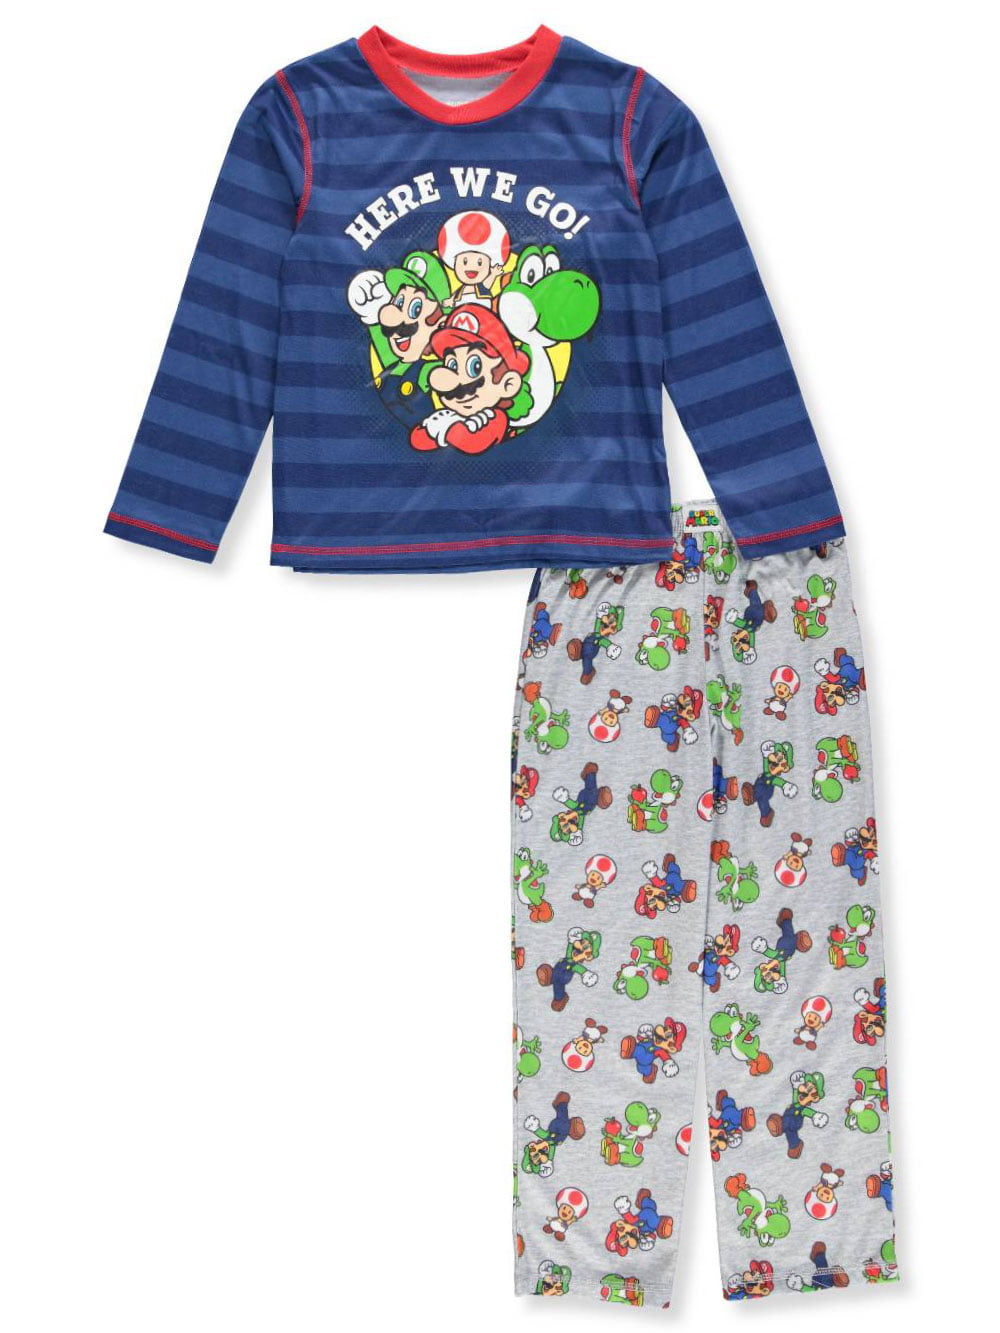 Super Mario Bros. - Super Mario Boys' 2-Piece Pajamas - blue, 4 - 5 ...